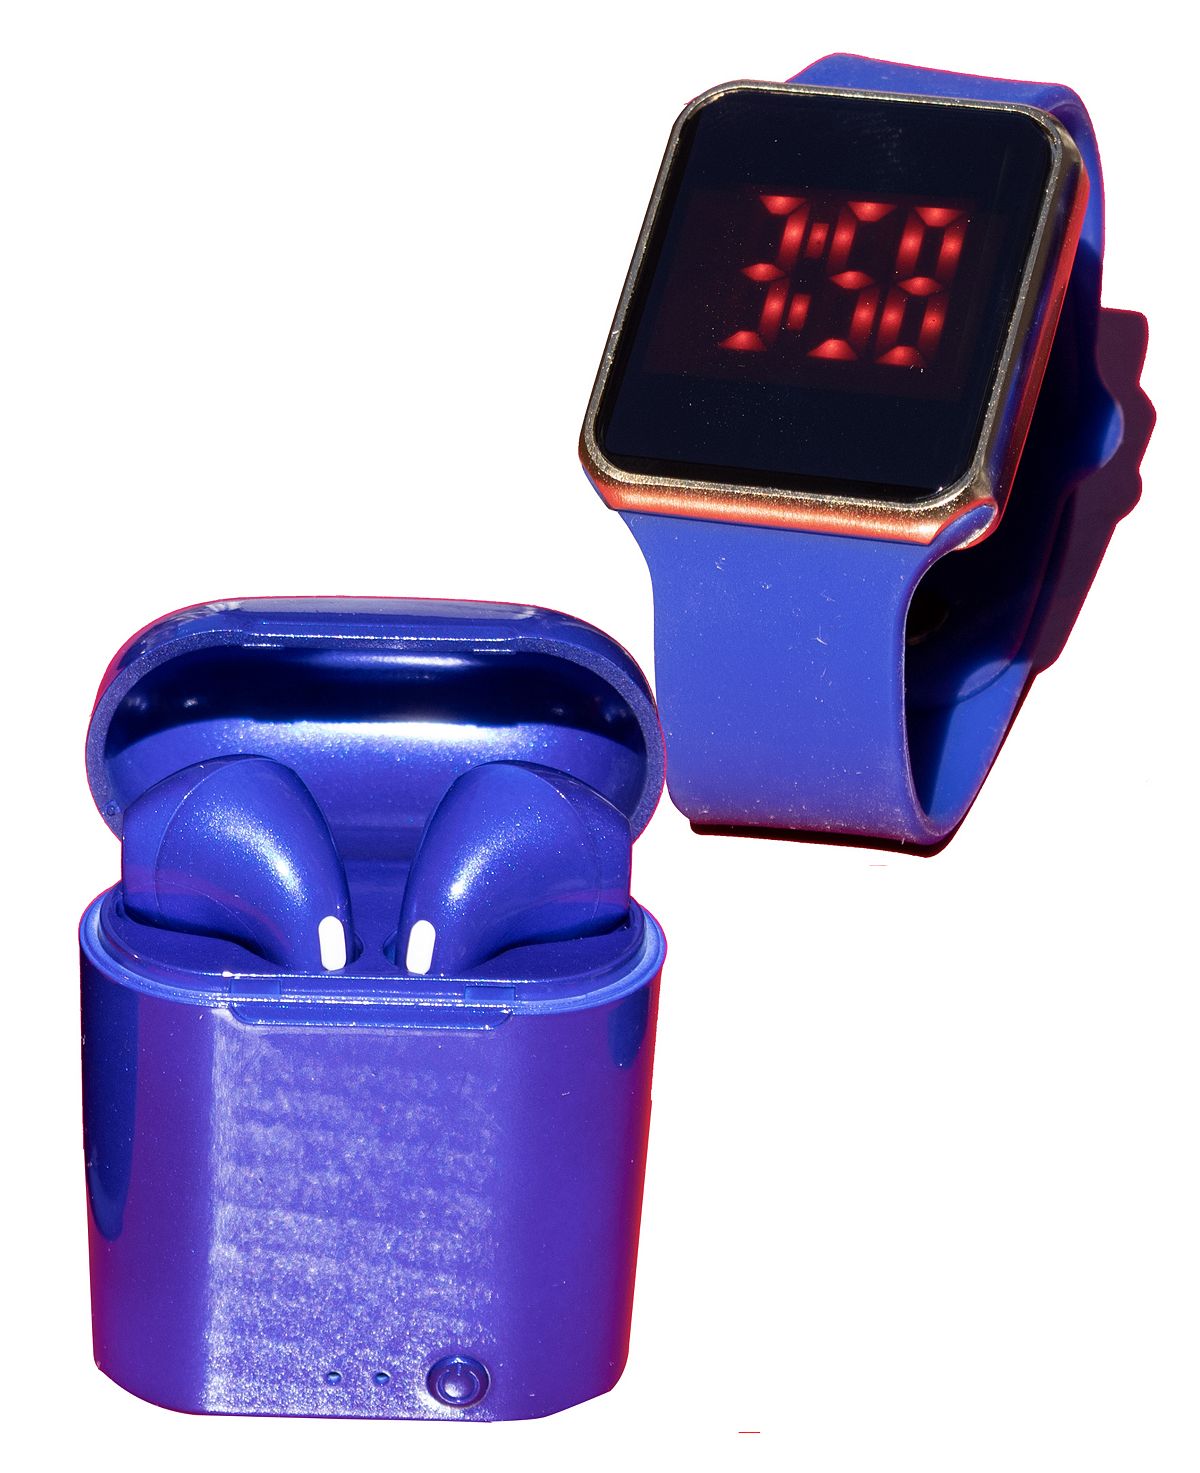 Унисекс светодиодные сенсорные часы и беспроводные наушники с портативным чехлом для зарядки Ztech